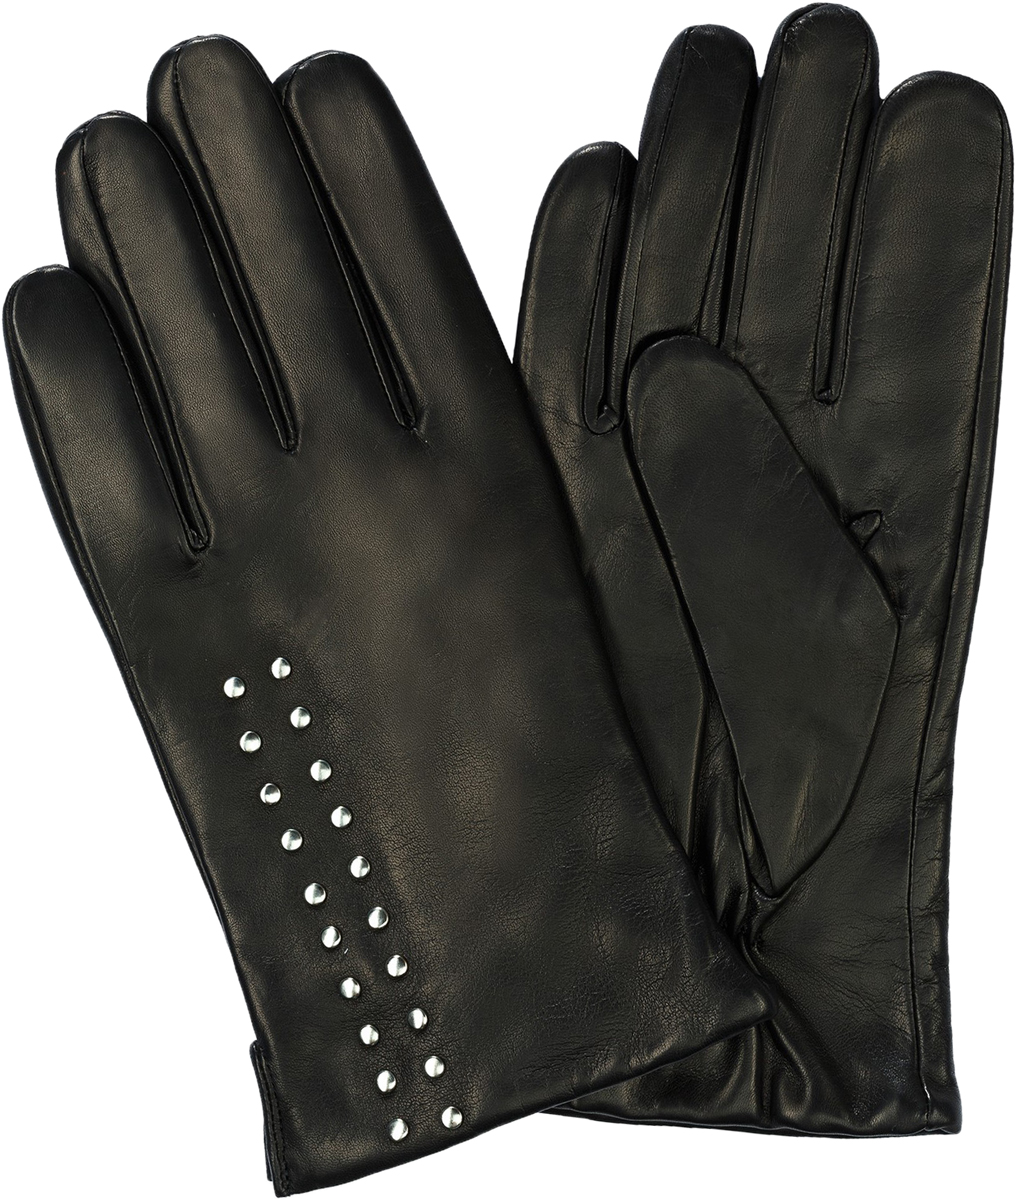 Перчатки мужские Michel Katana, цвет: черный. K11-BOUVELL/BL. Размер 10